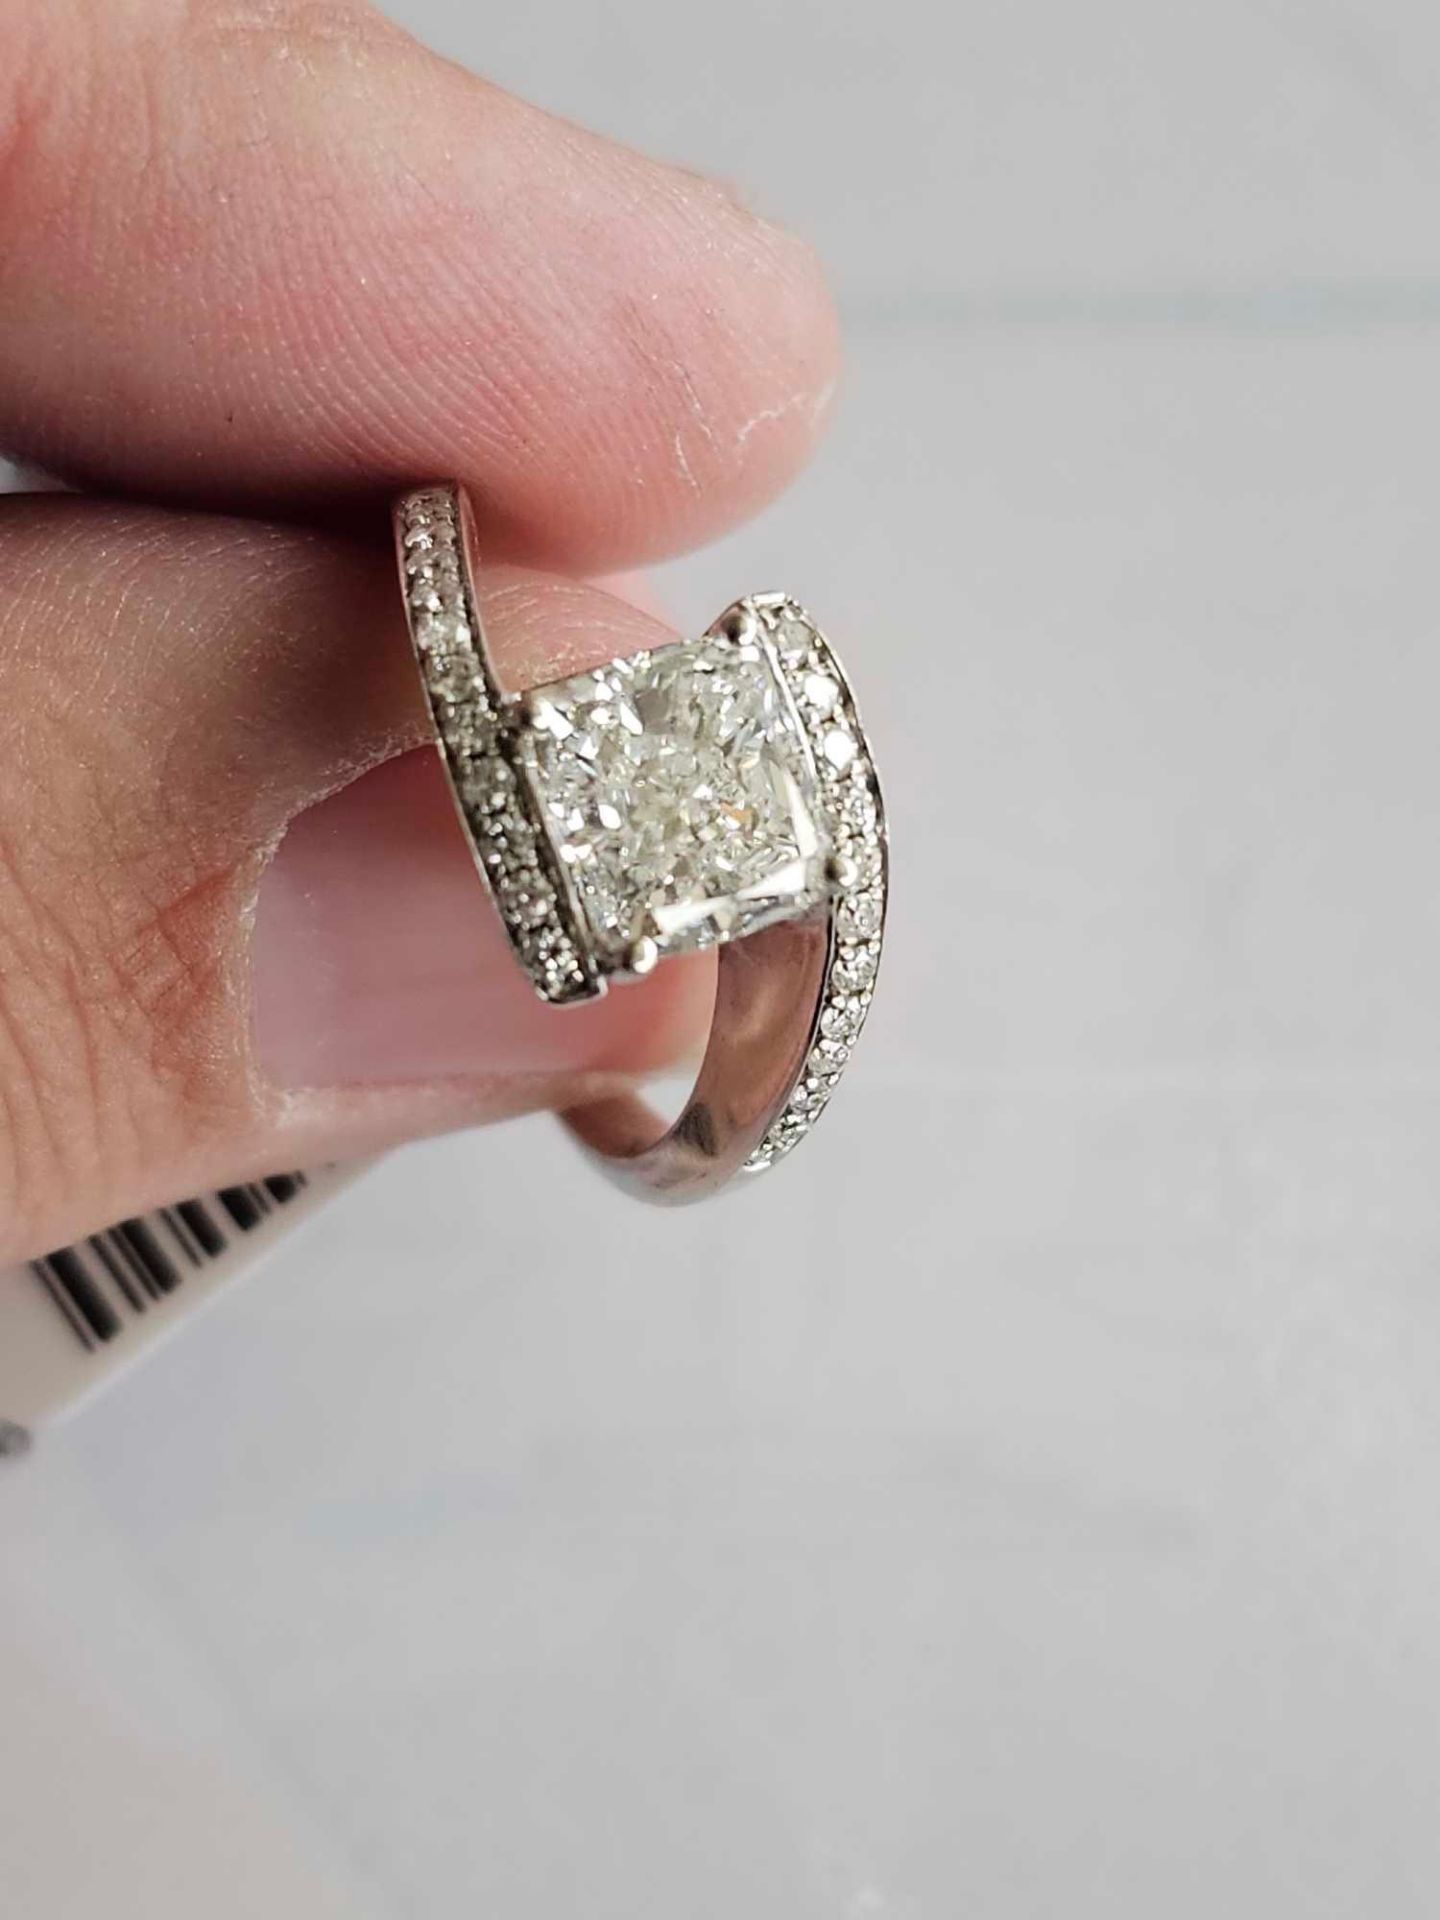 2 CT Diamond Ring (diamond is really nice) - Image 2 of 19